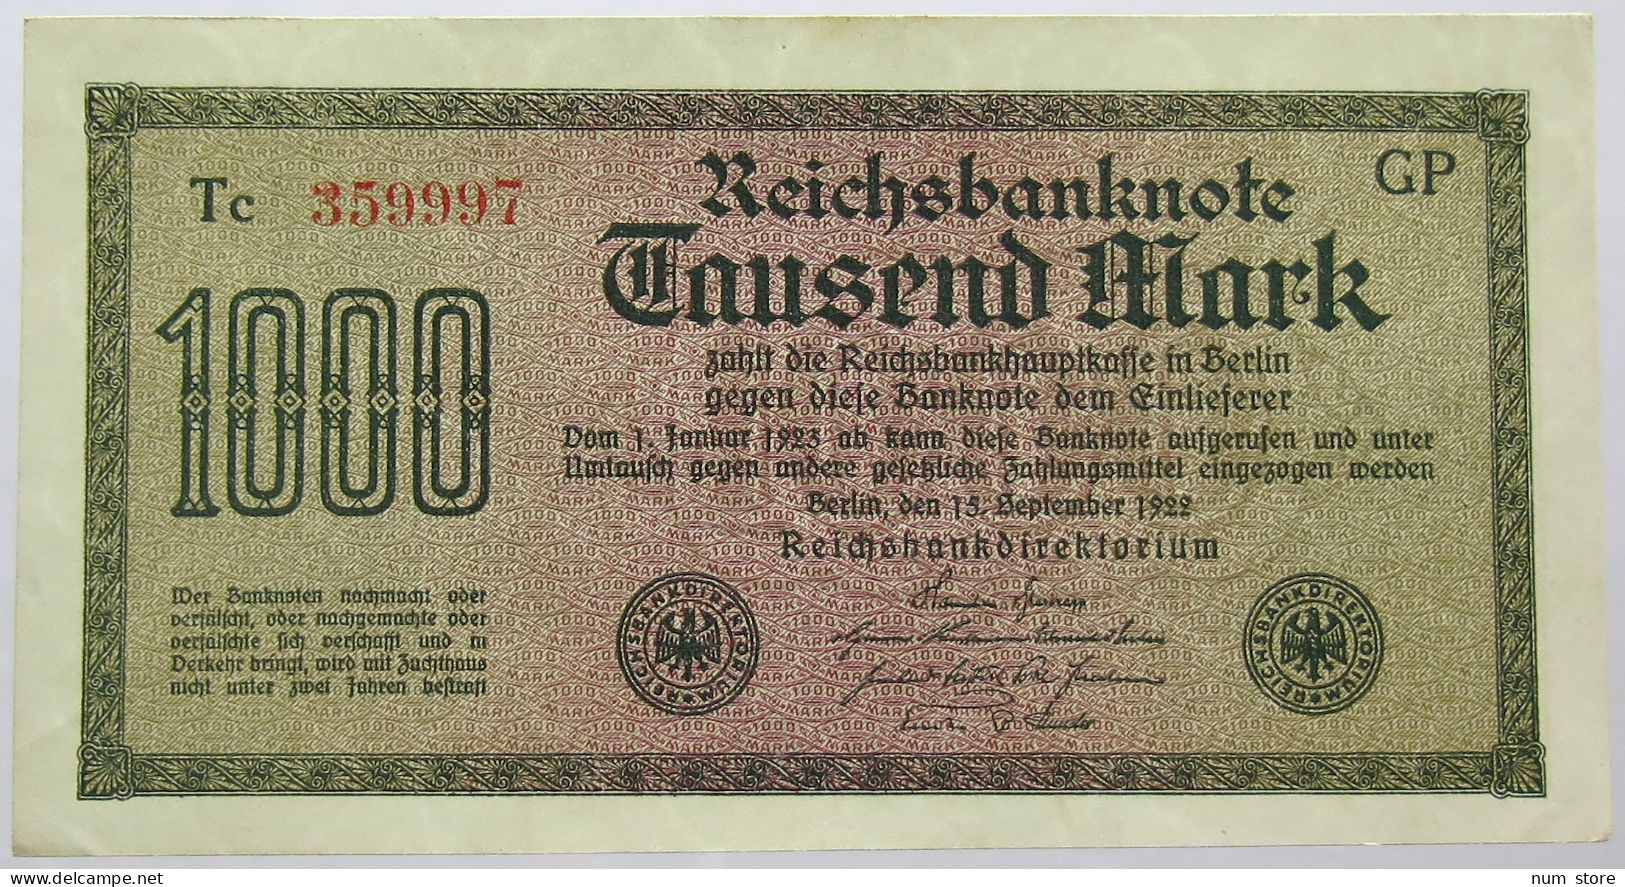 GERMANY 1000 MARK 1922 #alb067 0237 - 1.000 Mark